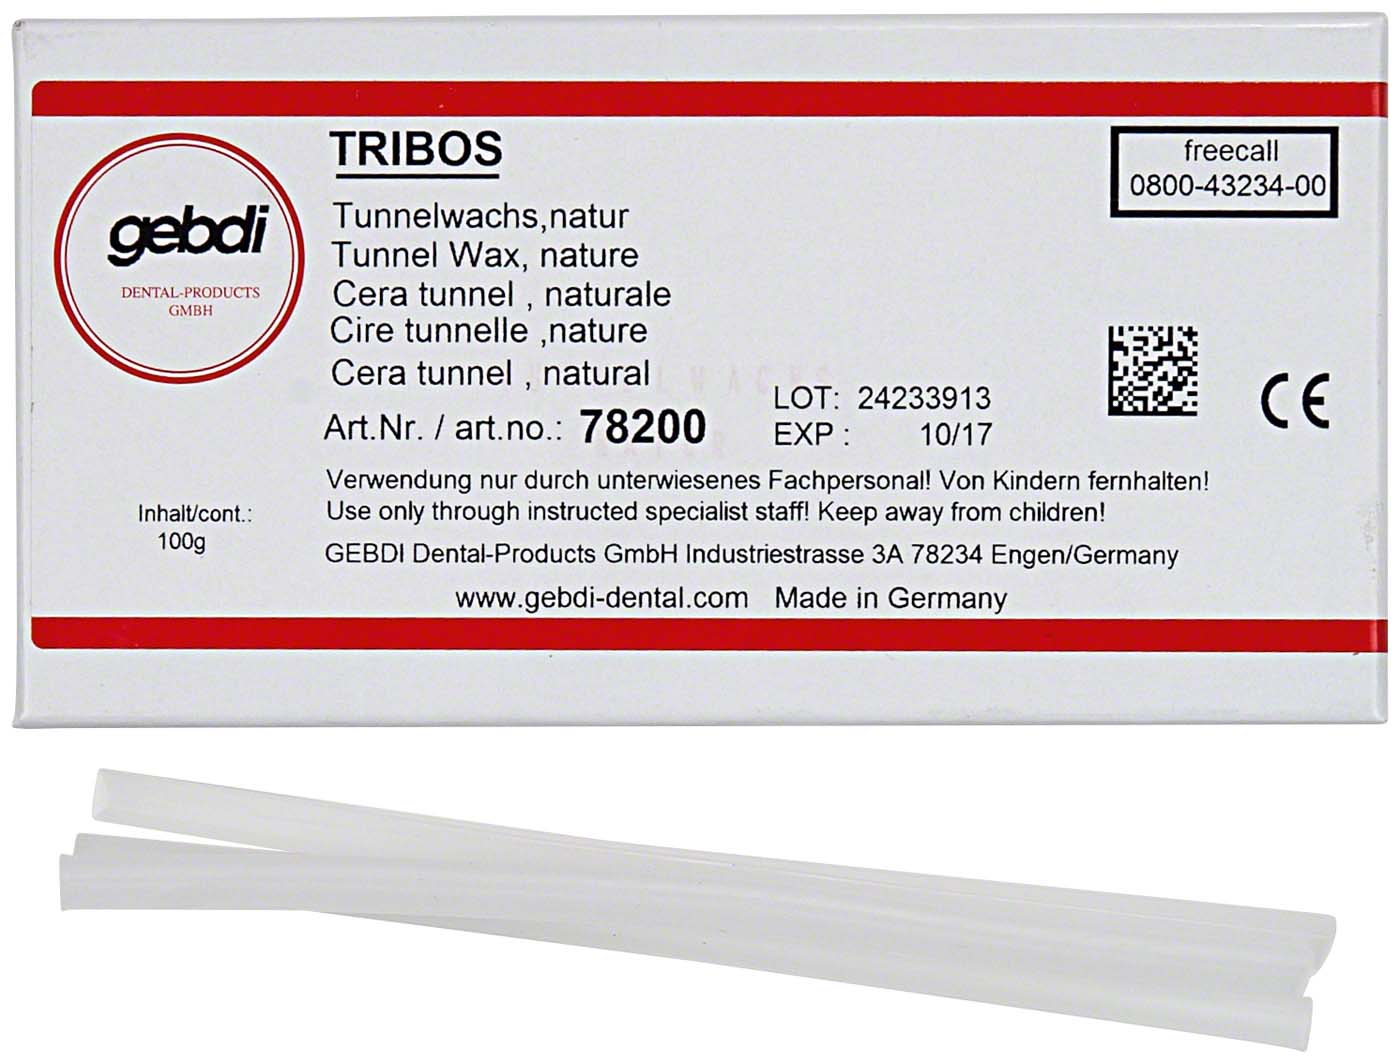 TRIBOS Tunnelwachs Gebdi Dentalprodukte